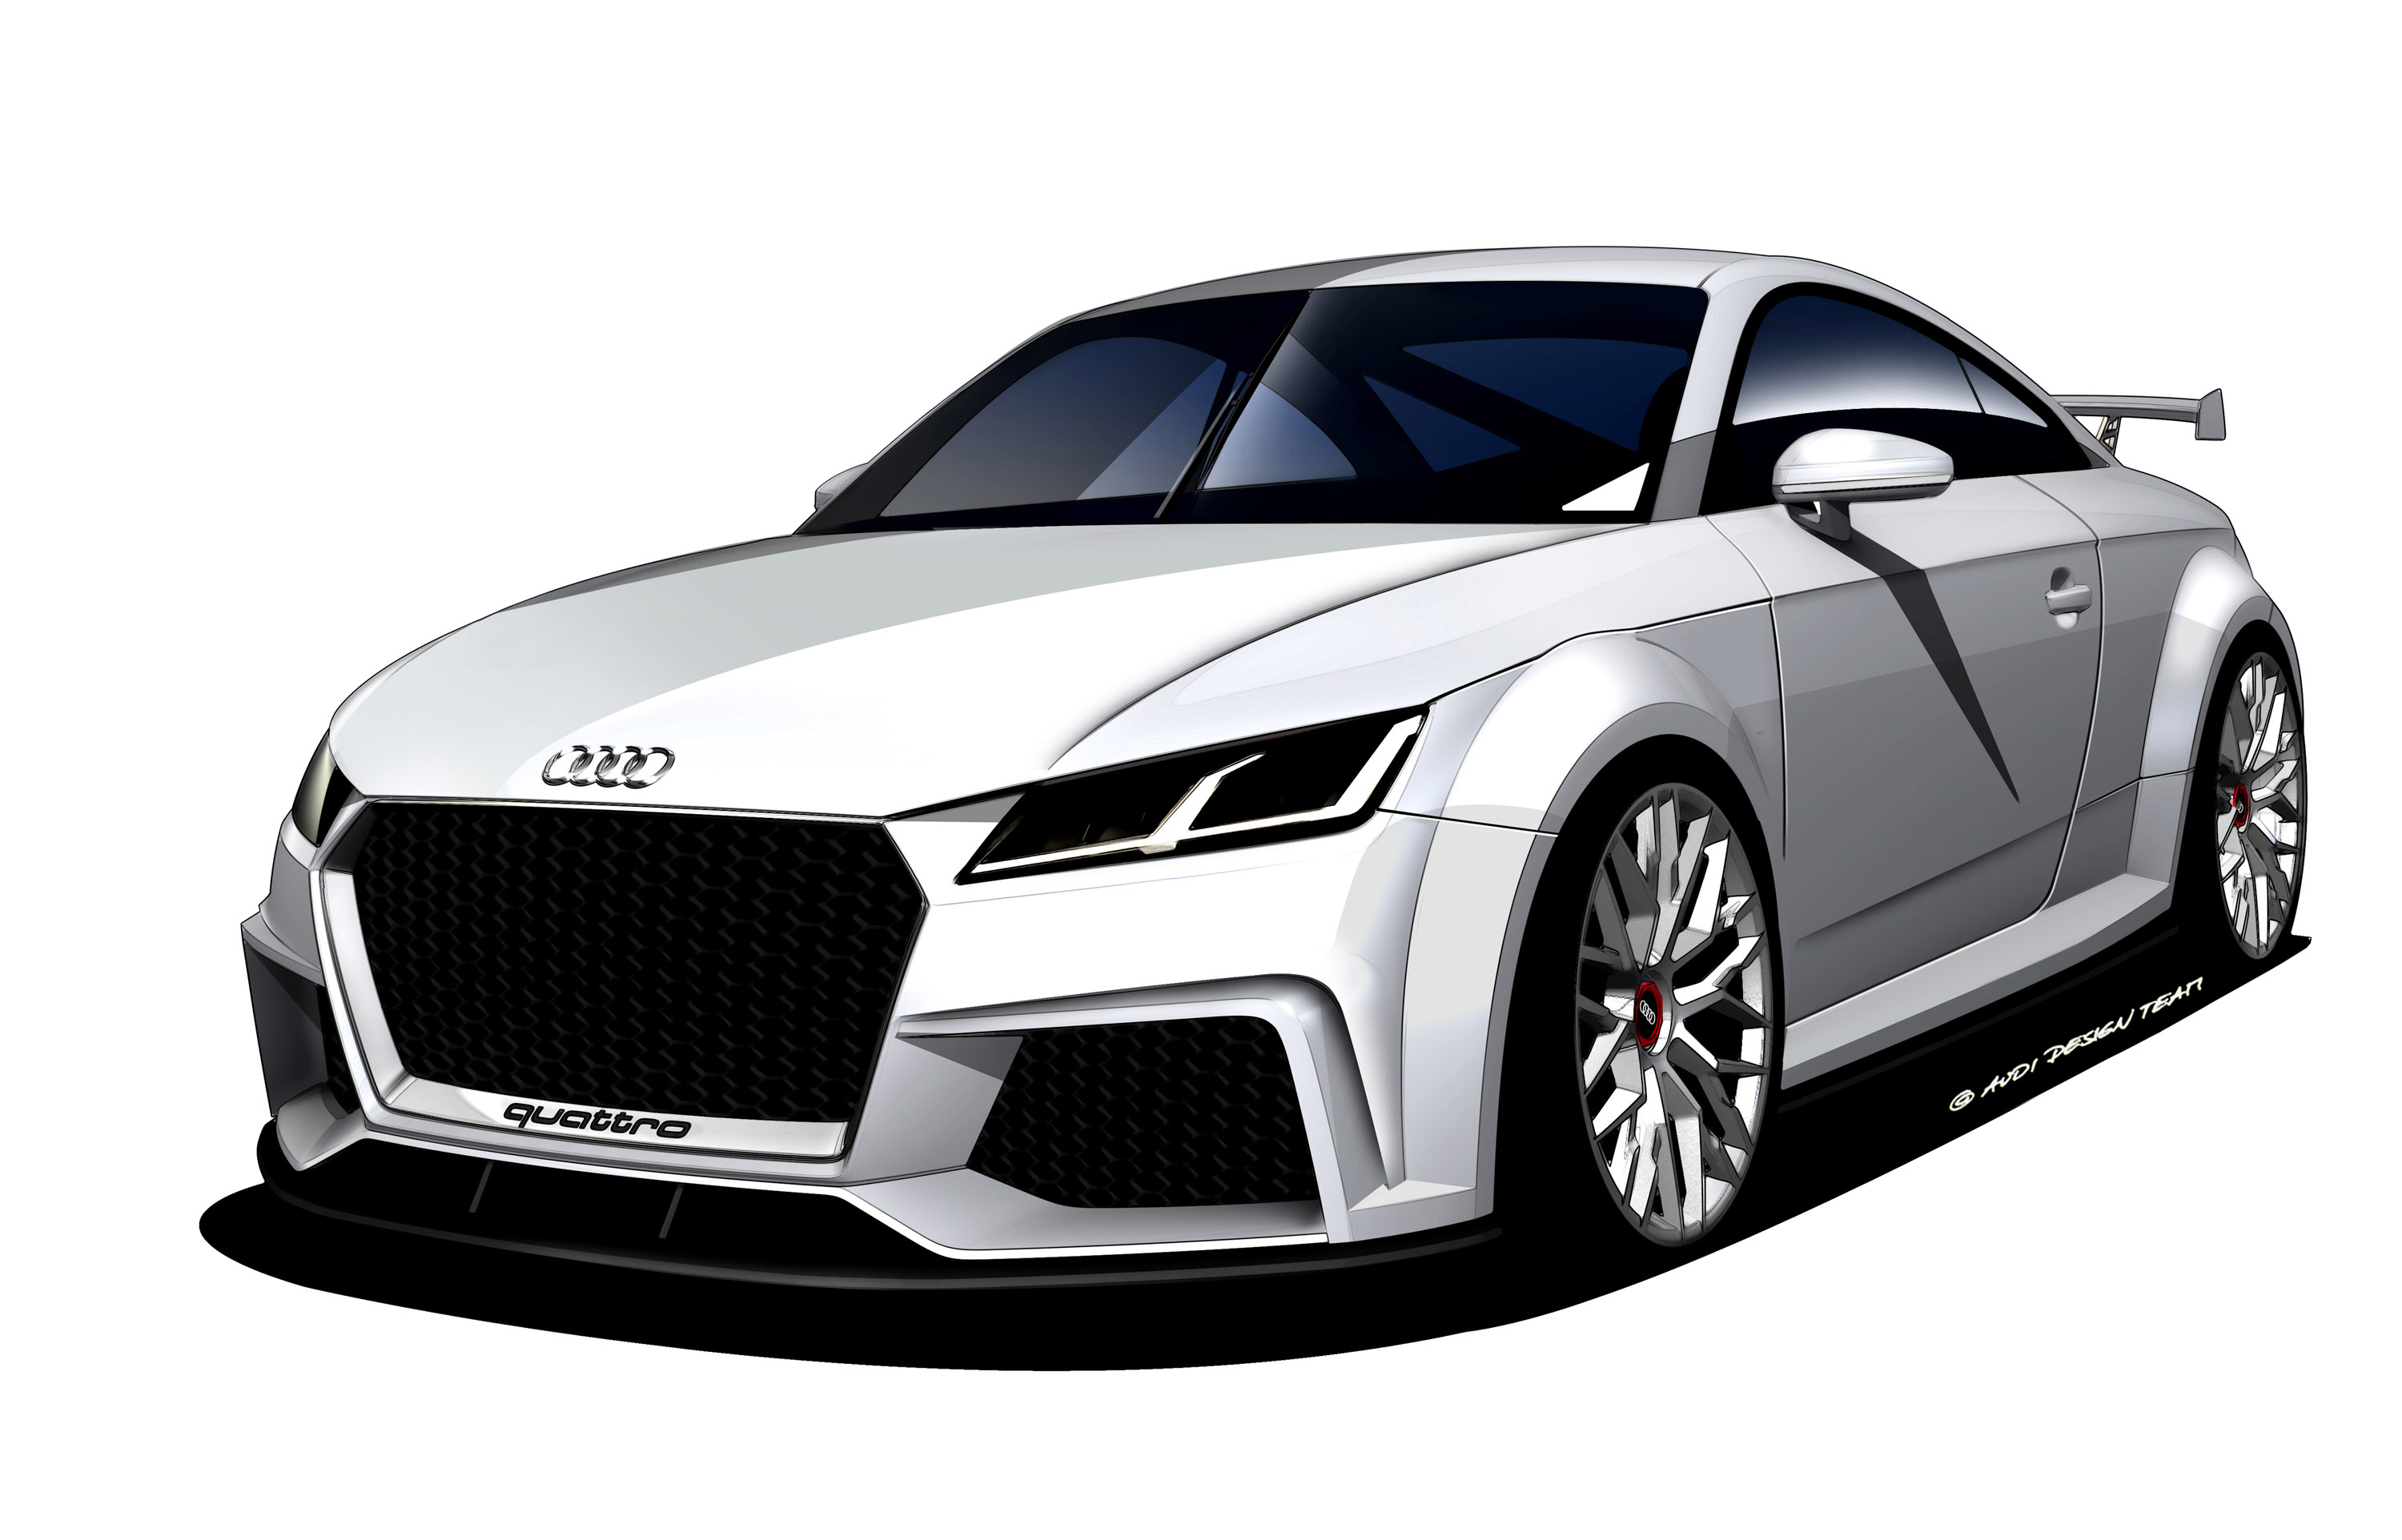 The Future Of Performance: The 2014 Audi TT Quattro Sport Concept